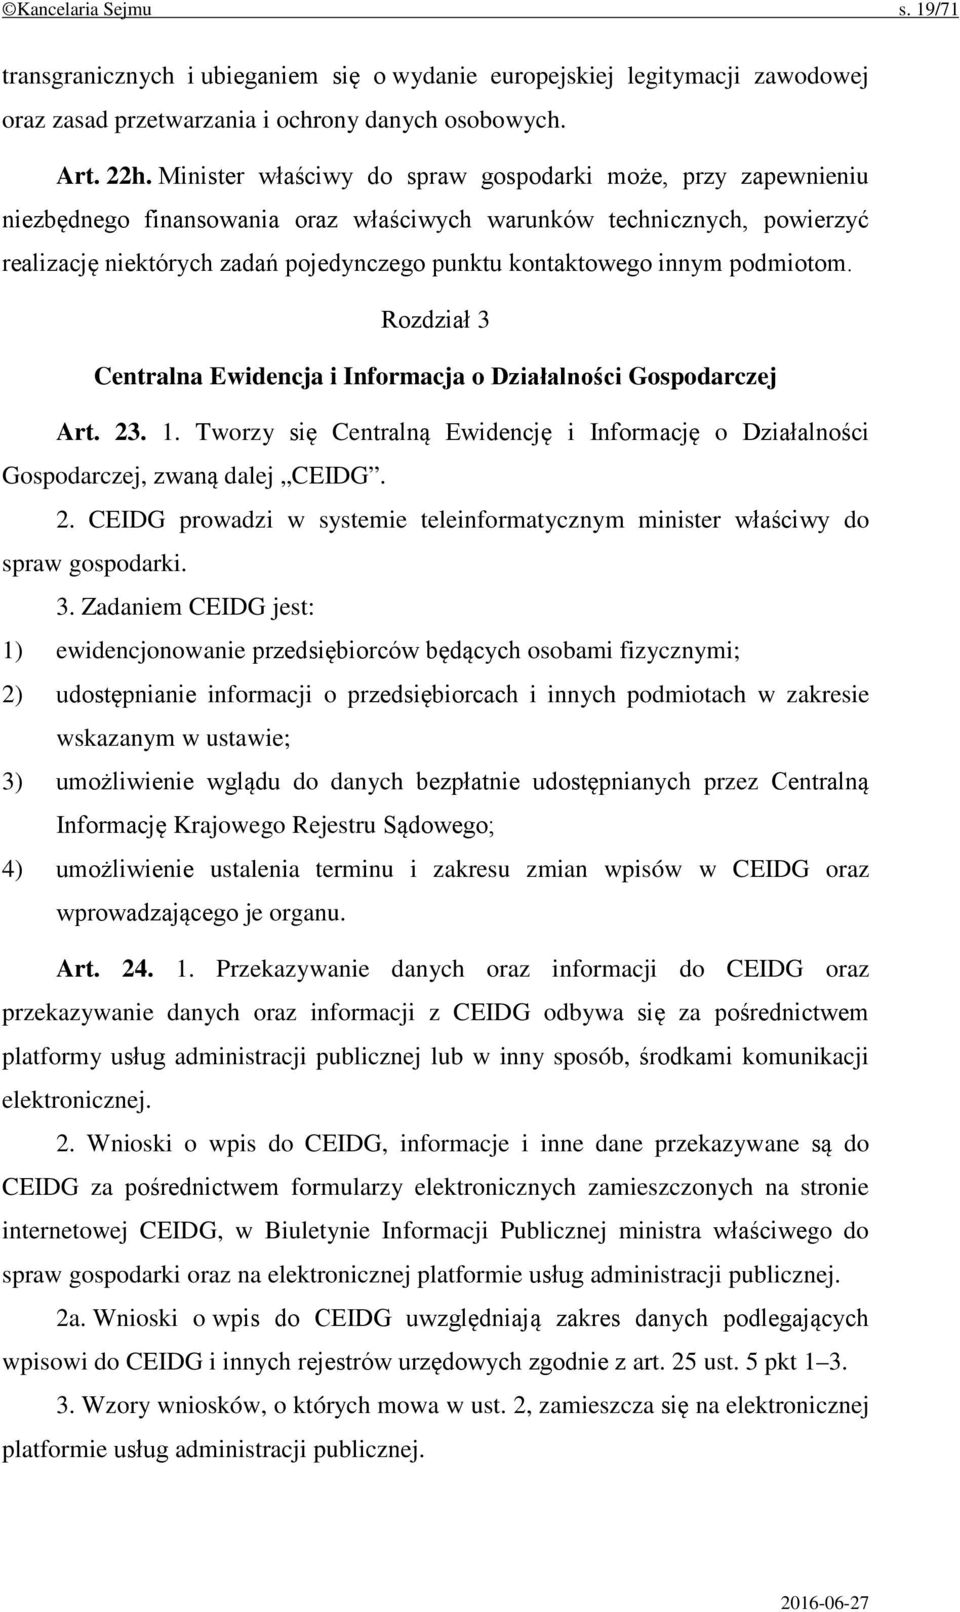 innym podmiotom. Rozdział 3 Centralna Ewidencja i Informacja o Działalności Gospodarczej Art. 23. 1. Tworzy się Centralną Ewidencję i Informację o Działalności Gospodarczej, zwaną dalej CEIDG. 2. CEIDG prowadzi w systemie teleinformatycznym minister właściwy do spraw gospodarki.